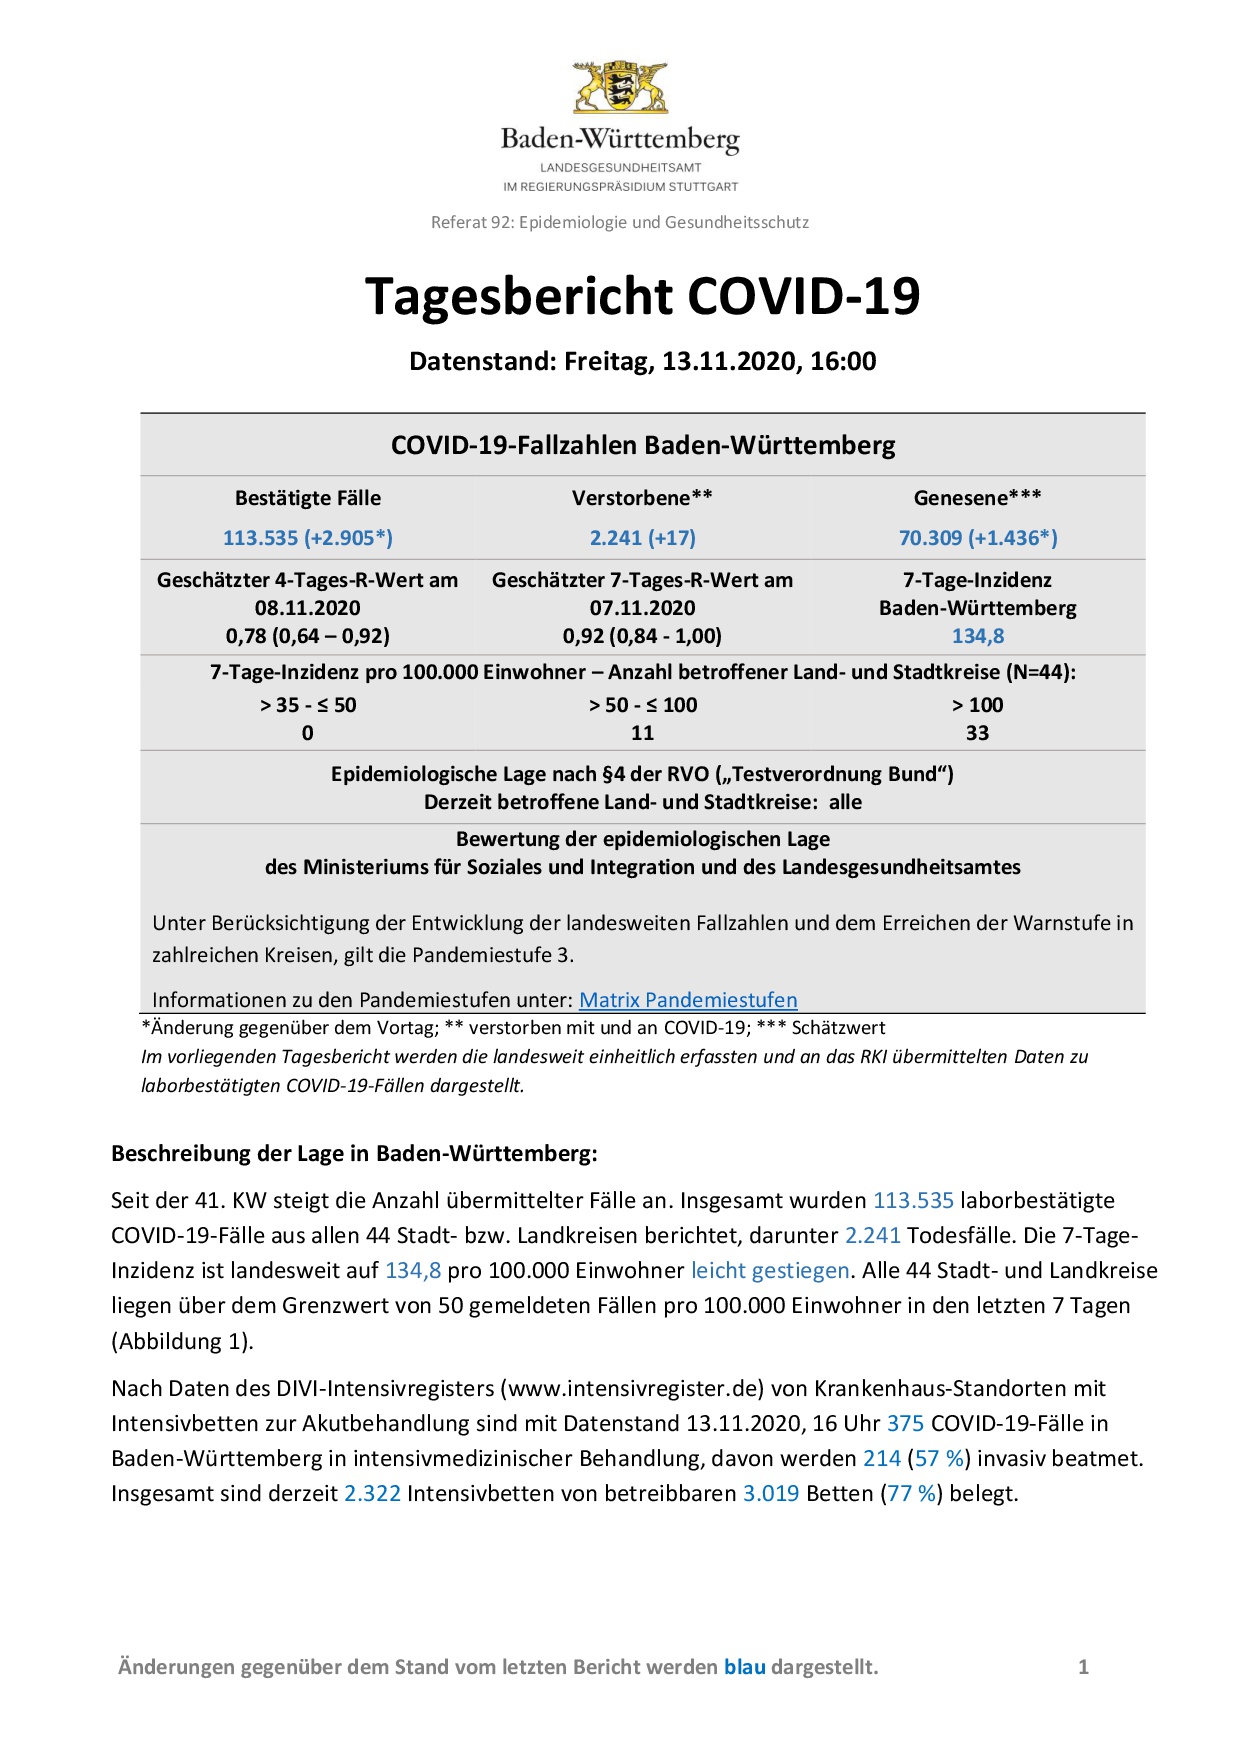 COVID-19 Tagesbericht (13.11.2020) des Landesgesundheitsamts Baden-Württemberg – (ausführlicher)